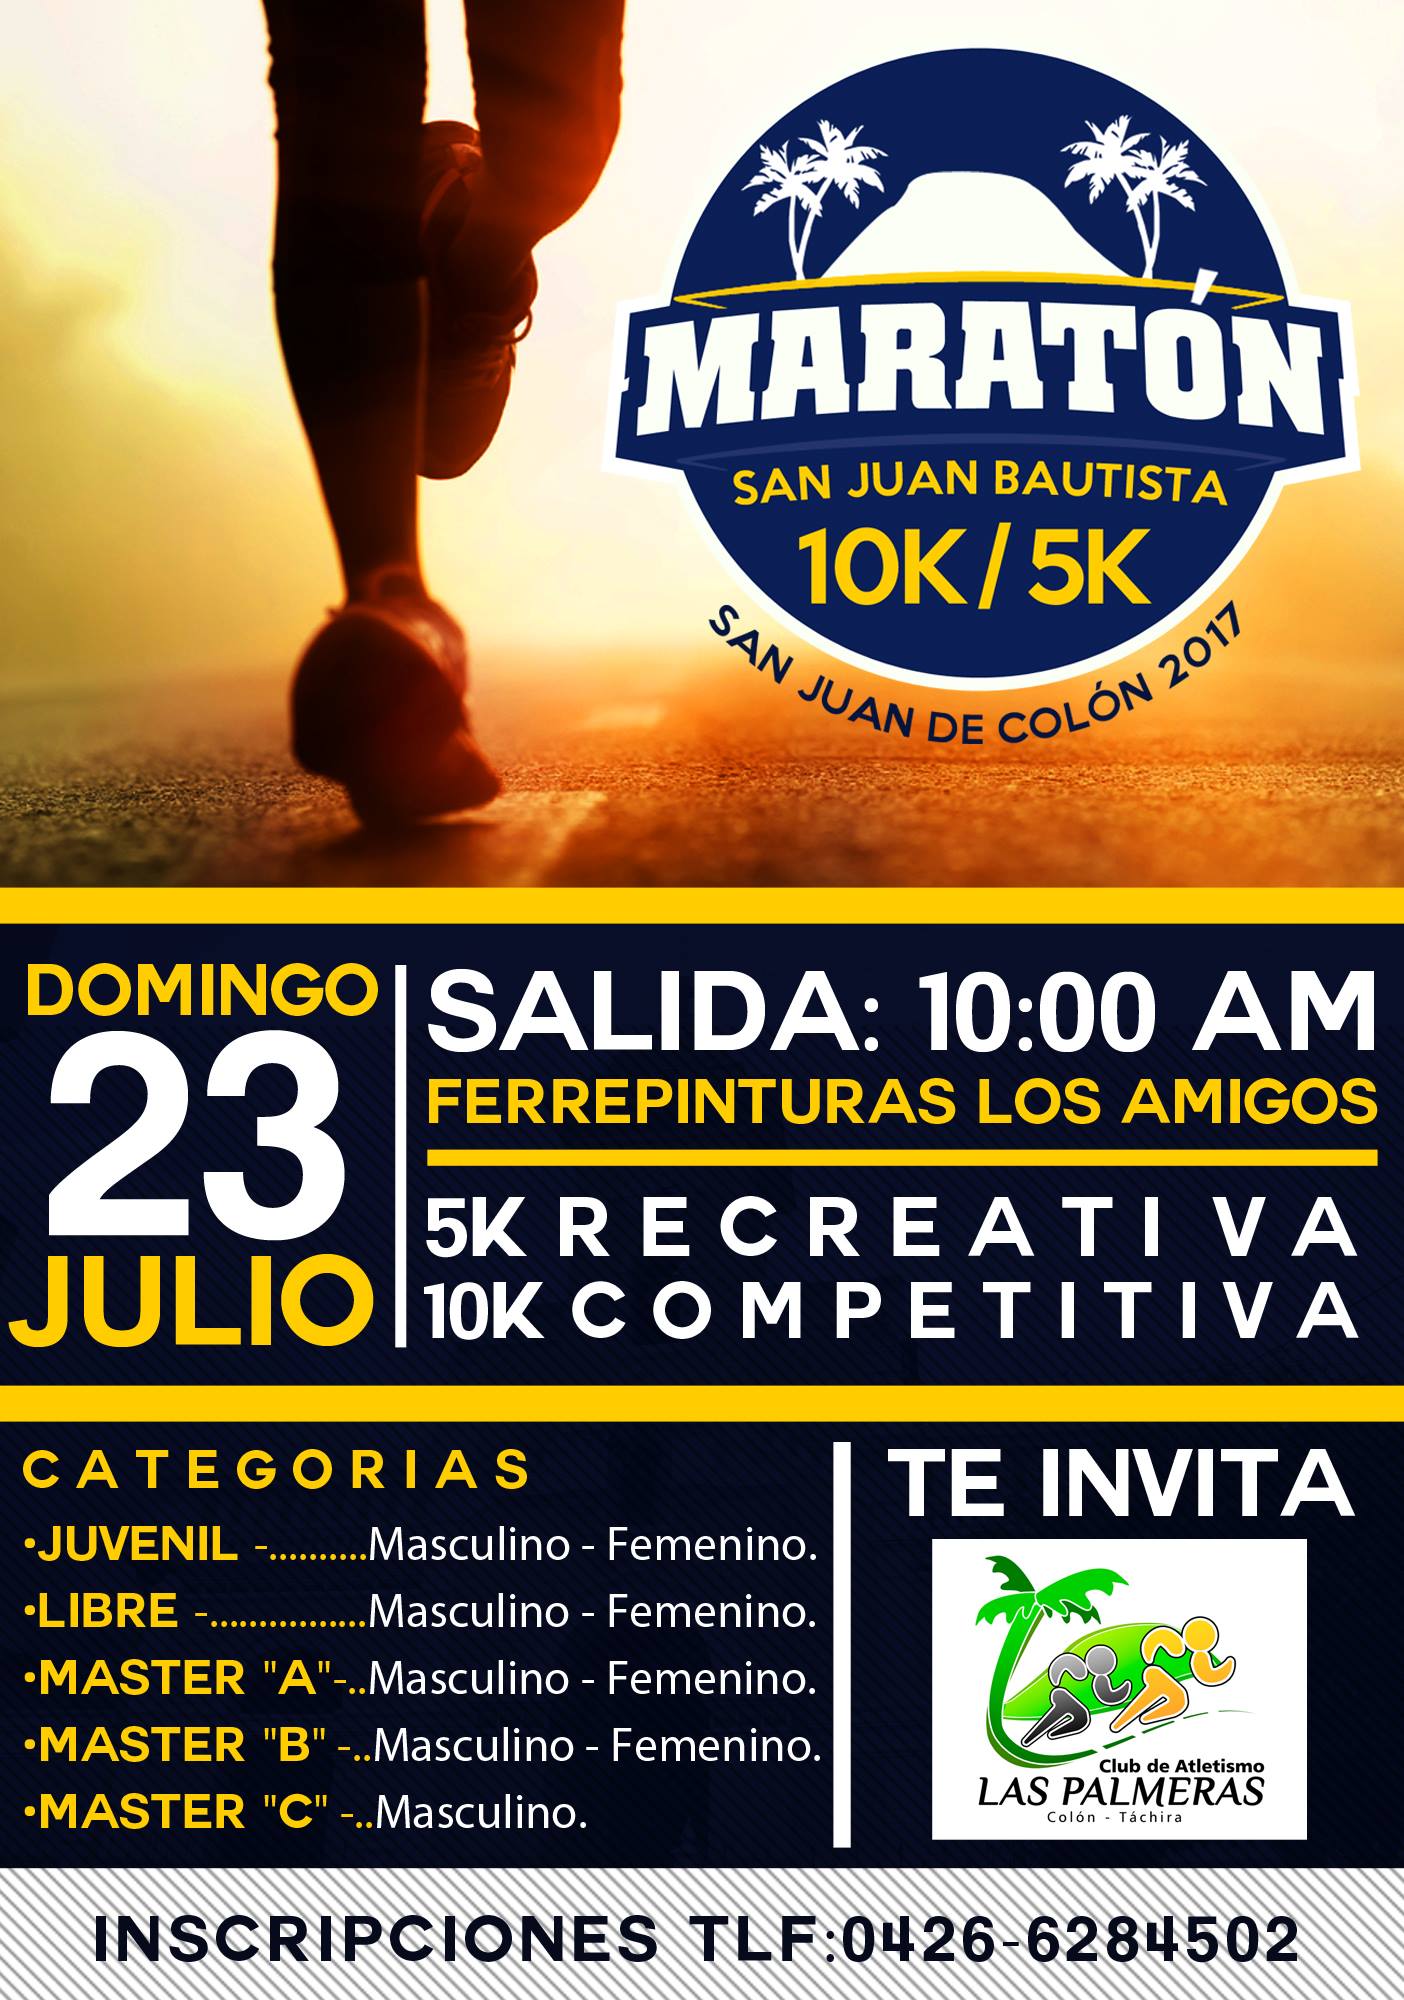 IMG Maratón Colón 2017 (2)